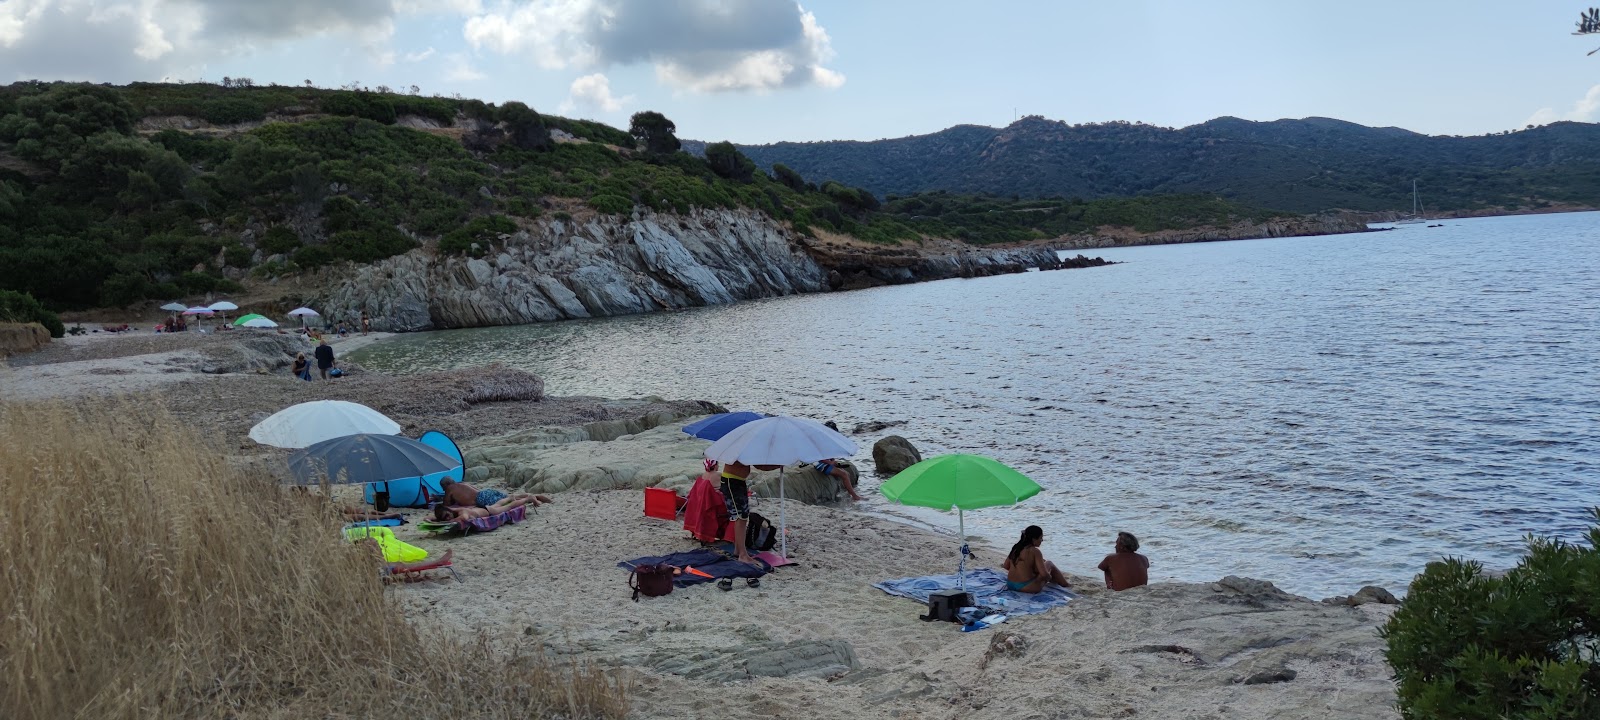 Foto av Spiaggia di Larboi och bosättningen